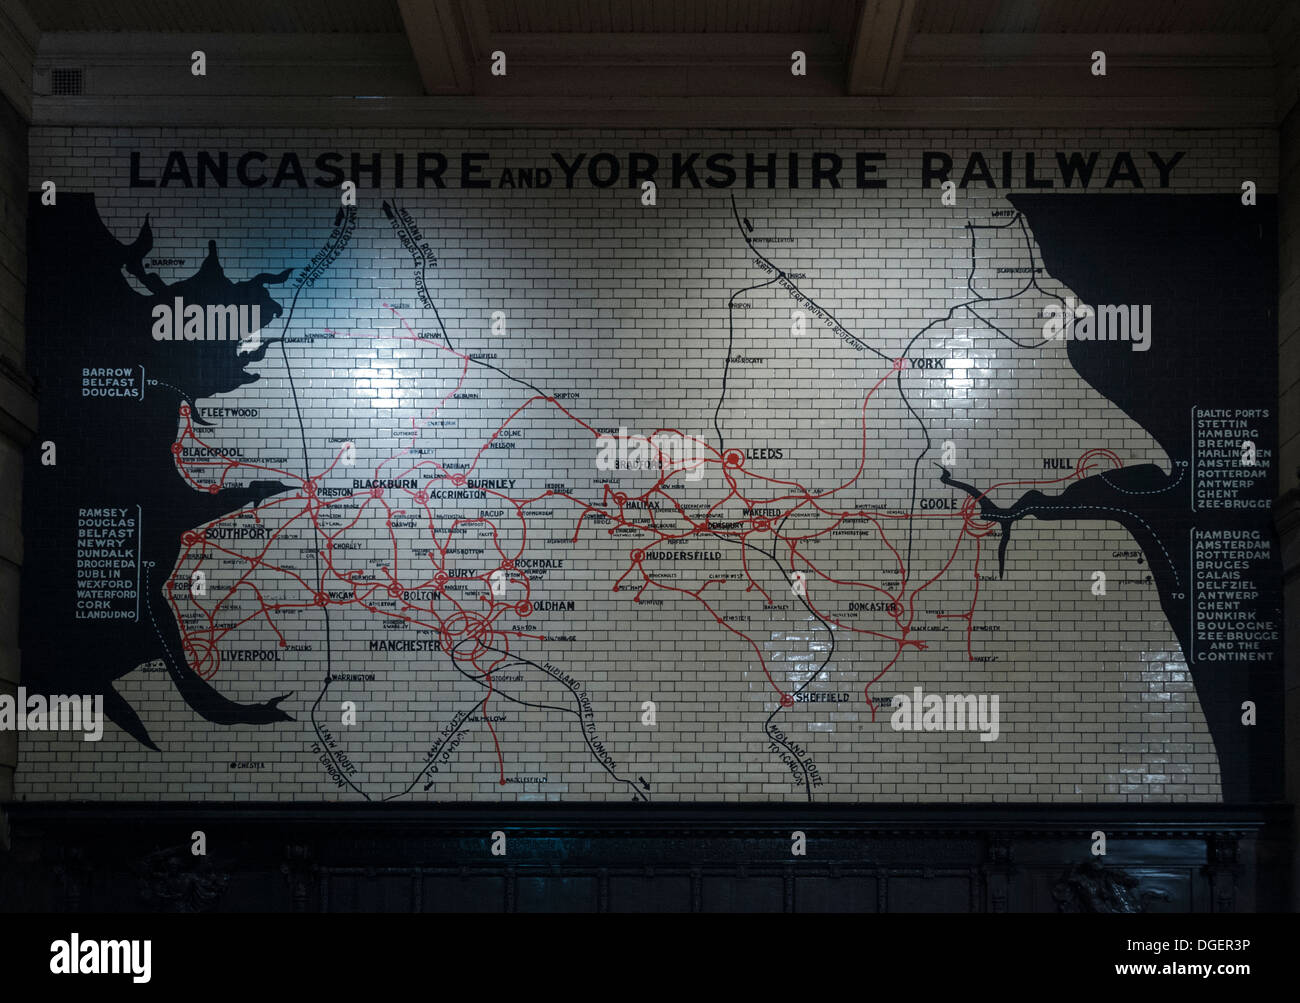 Karte von Lancashire und Yorkshire Railway Strecken an einer Wand an der Victoria Station, Manchester, England, UK Stockfoto